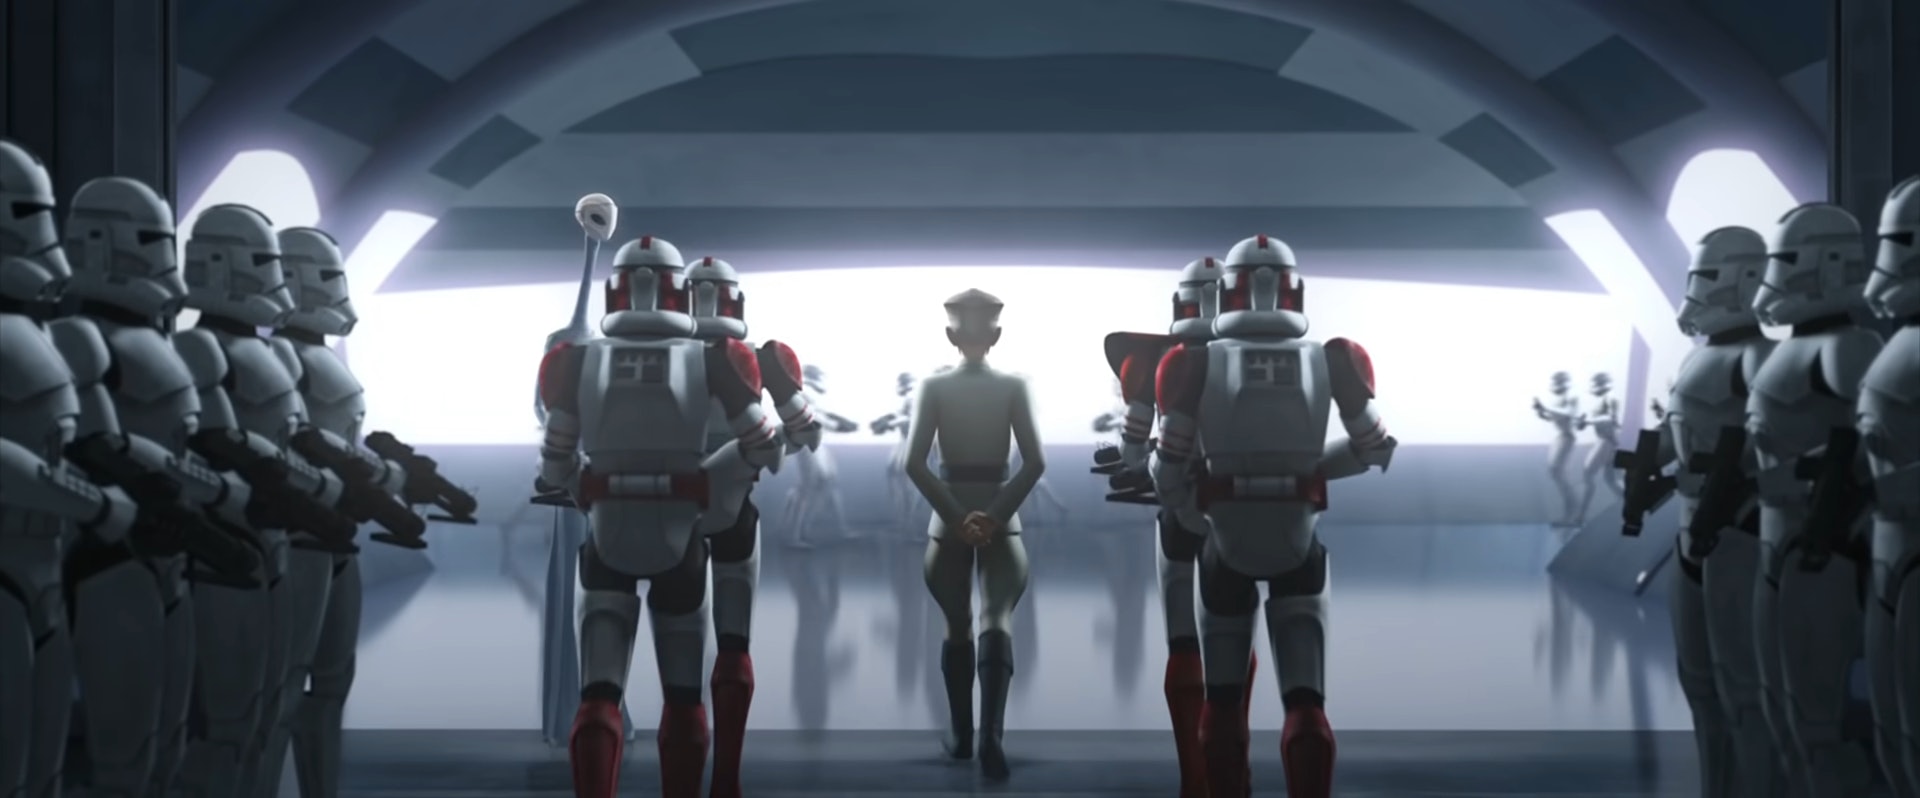 no clone wars in star wars battlefront